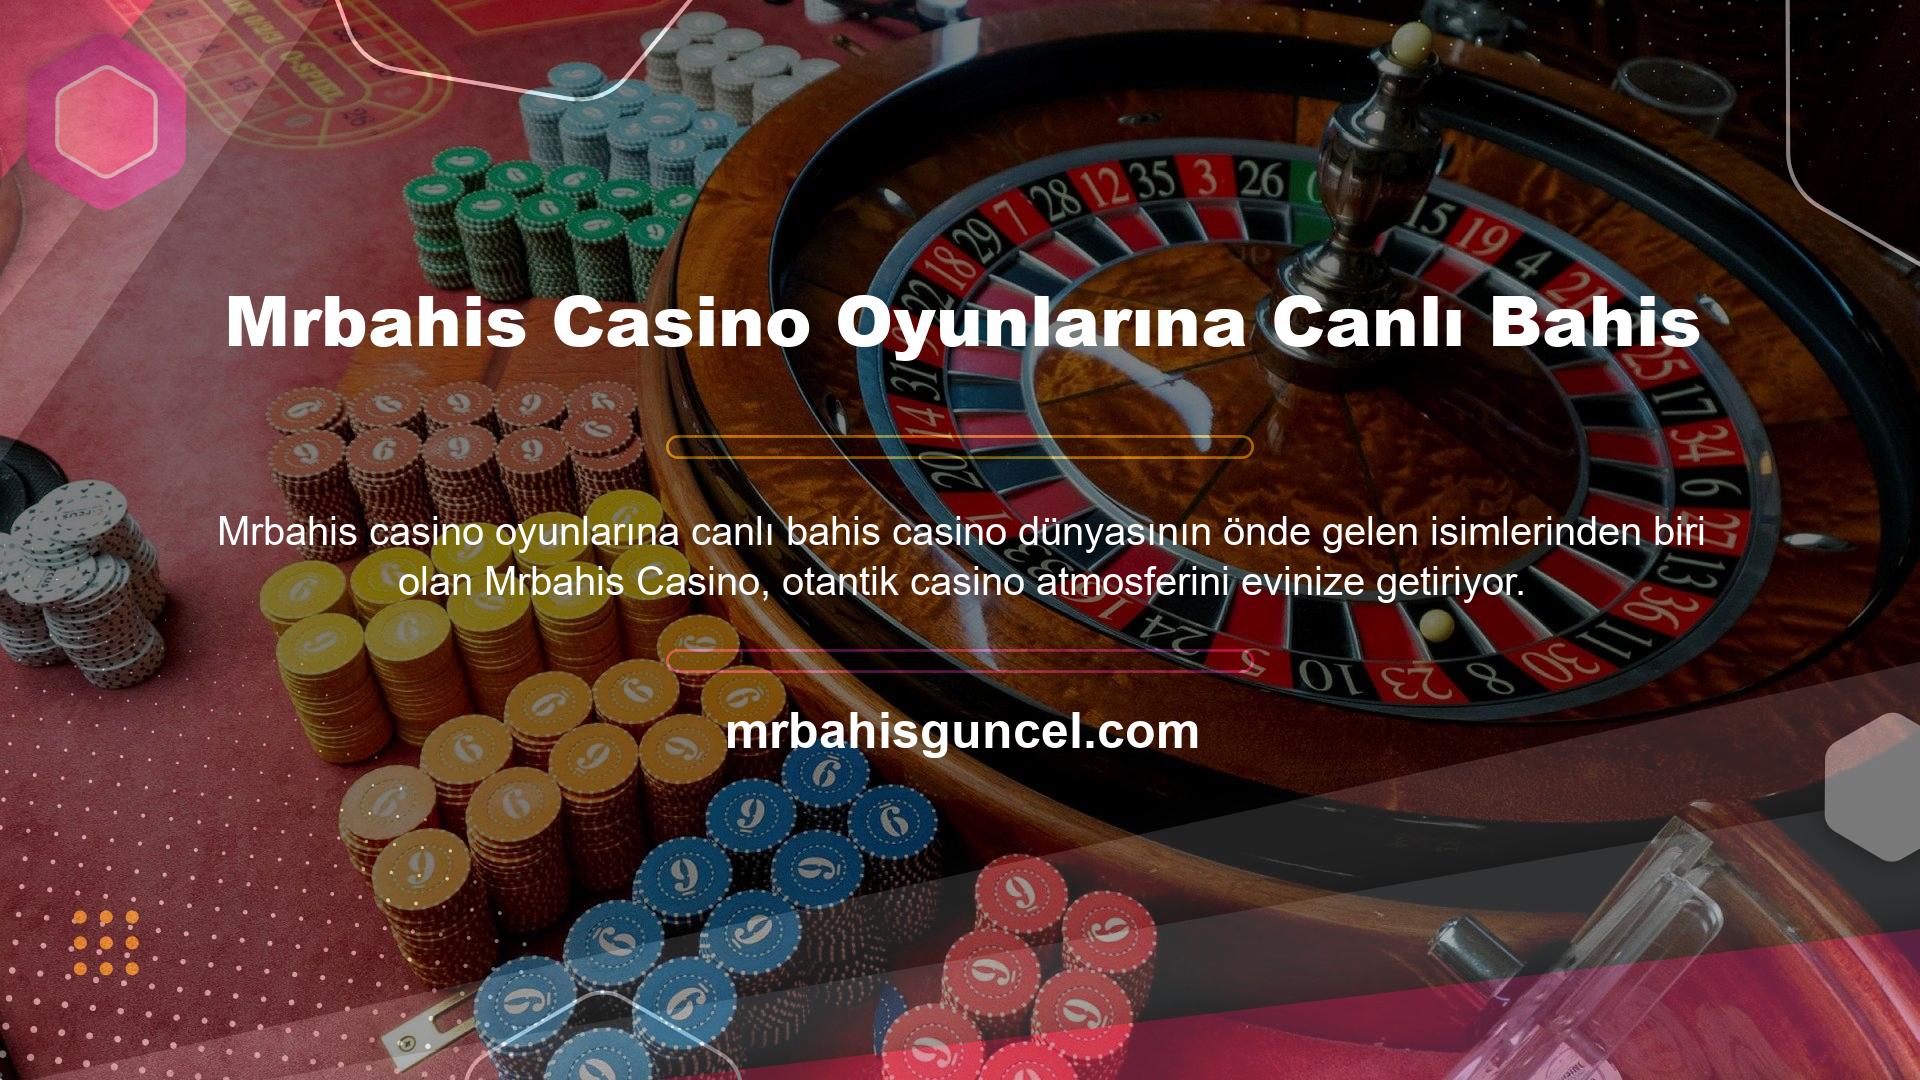 Bu sitedeki canlı casino oyunları hizmetine tıklamak, sizi hemen bahislerinizi yapabileceğiniz güzel ve ilgi çekici bir satıcı sunumuna götürür